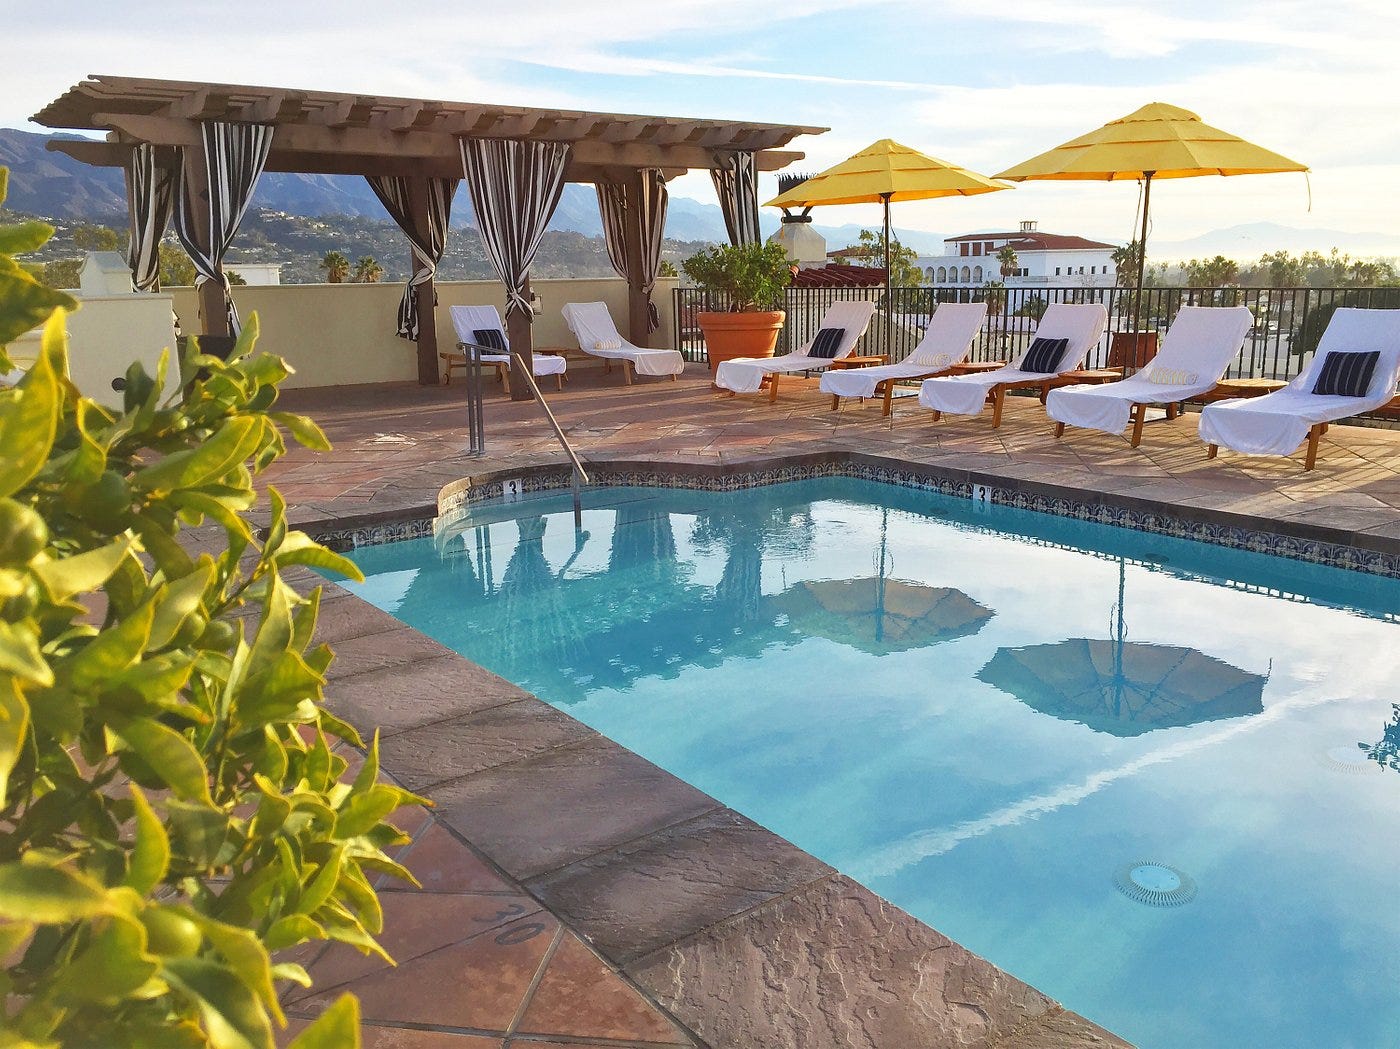 The rooftop pool at Kimpton Canary Hotel in Santa Barbara.